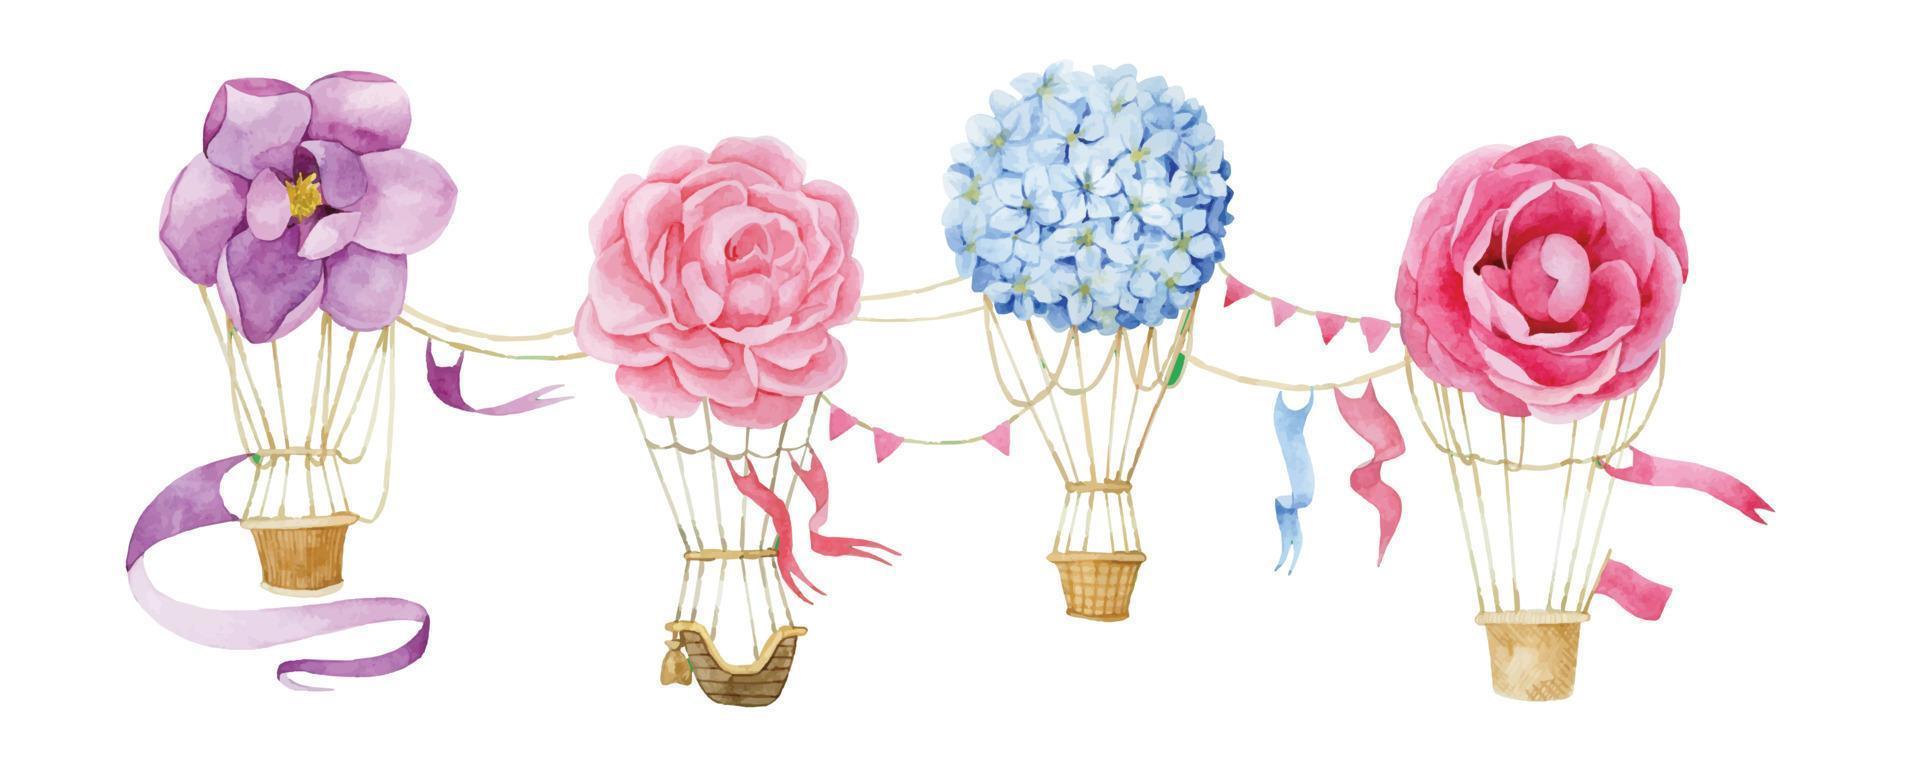 ensemble de dessin à l'aquarelle de ballons avec fleurs, bordure, impression. motif doux et délicat pour les filles, les fleurs roses, les hortensias, les pivoines et les ballons. vecteur